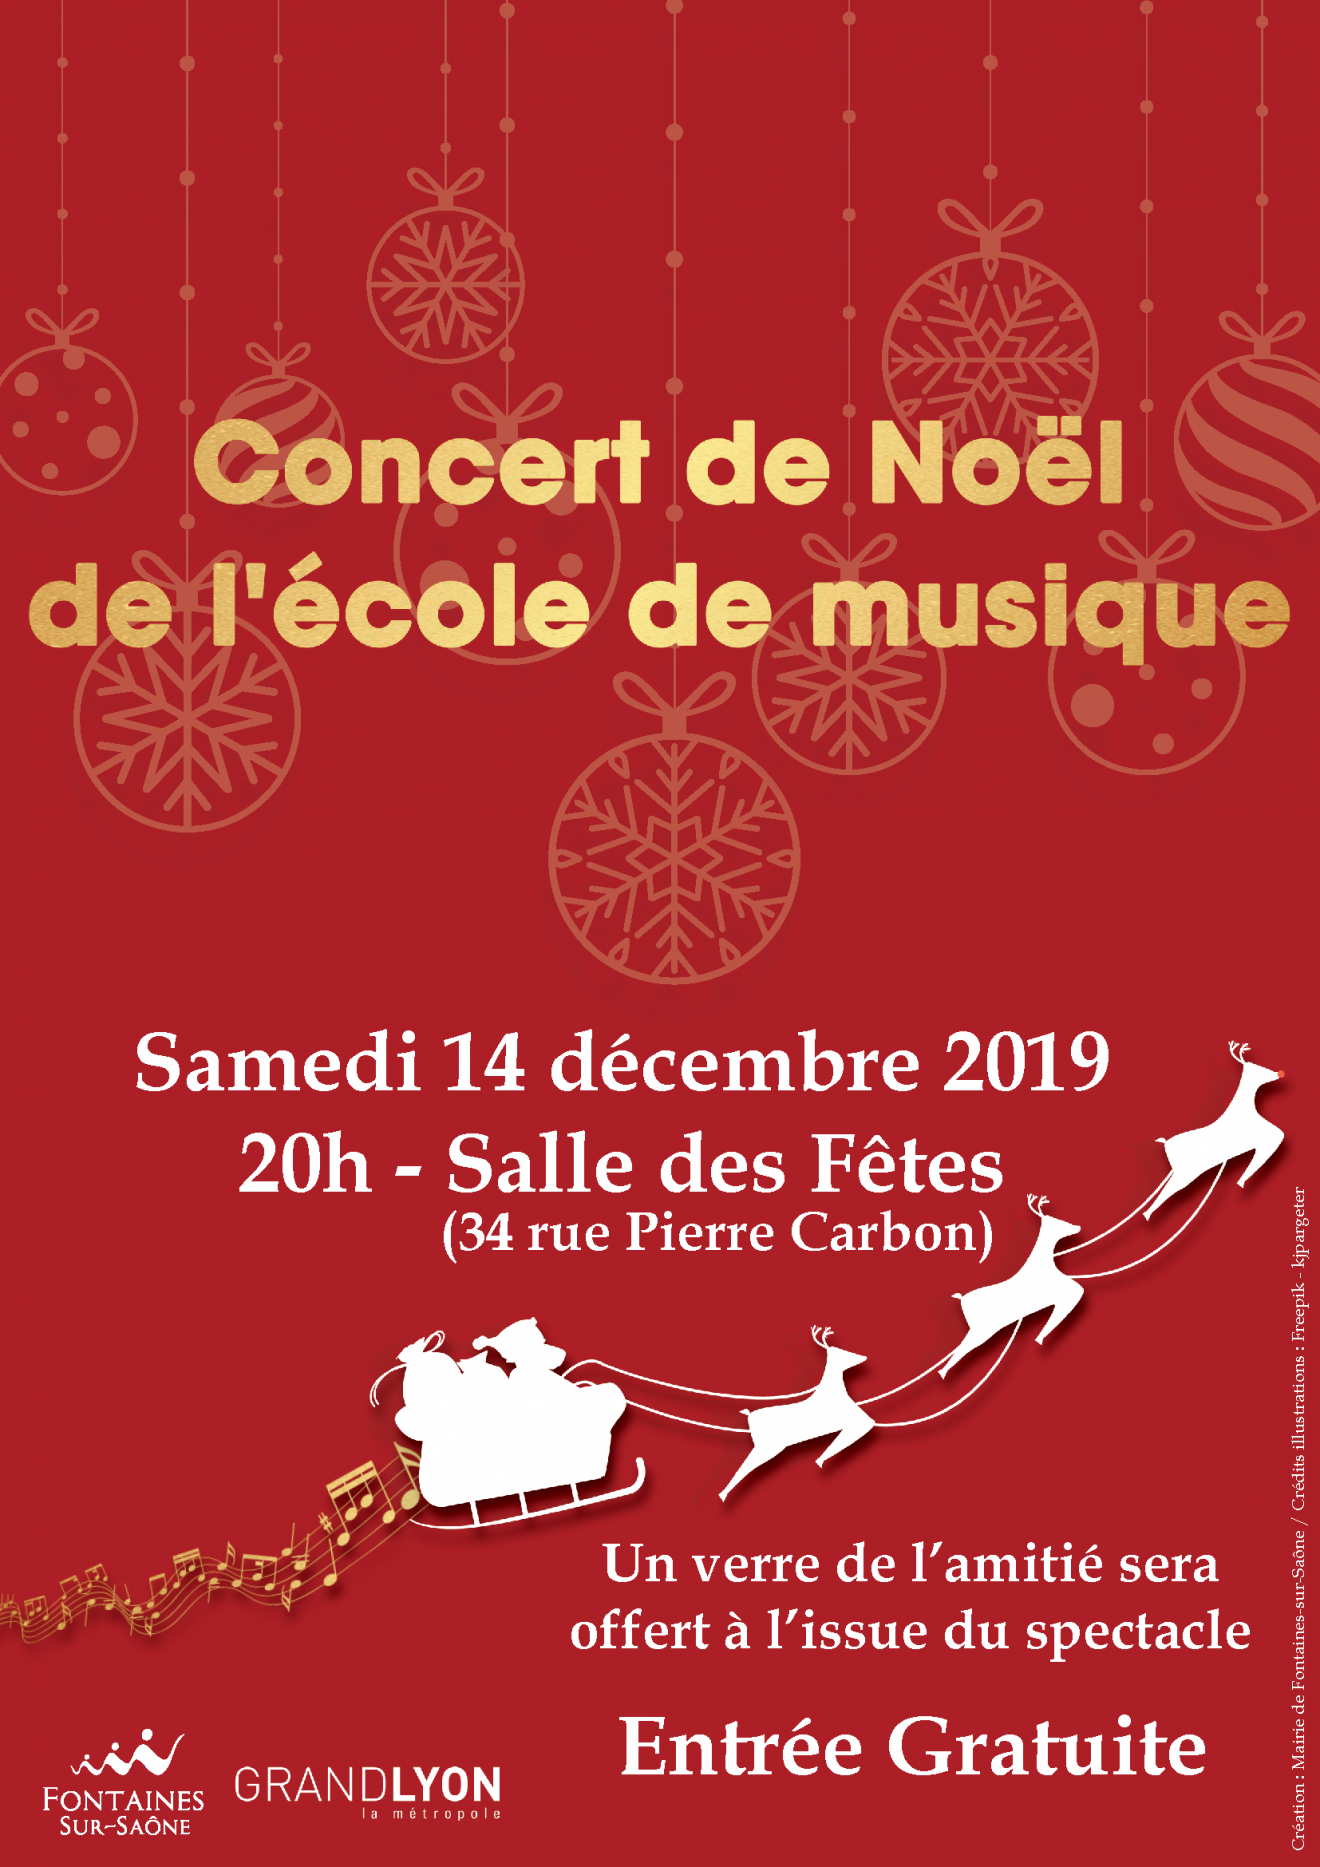 Concert de Noel 2019